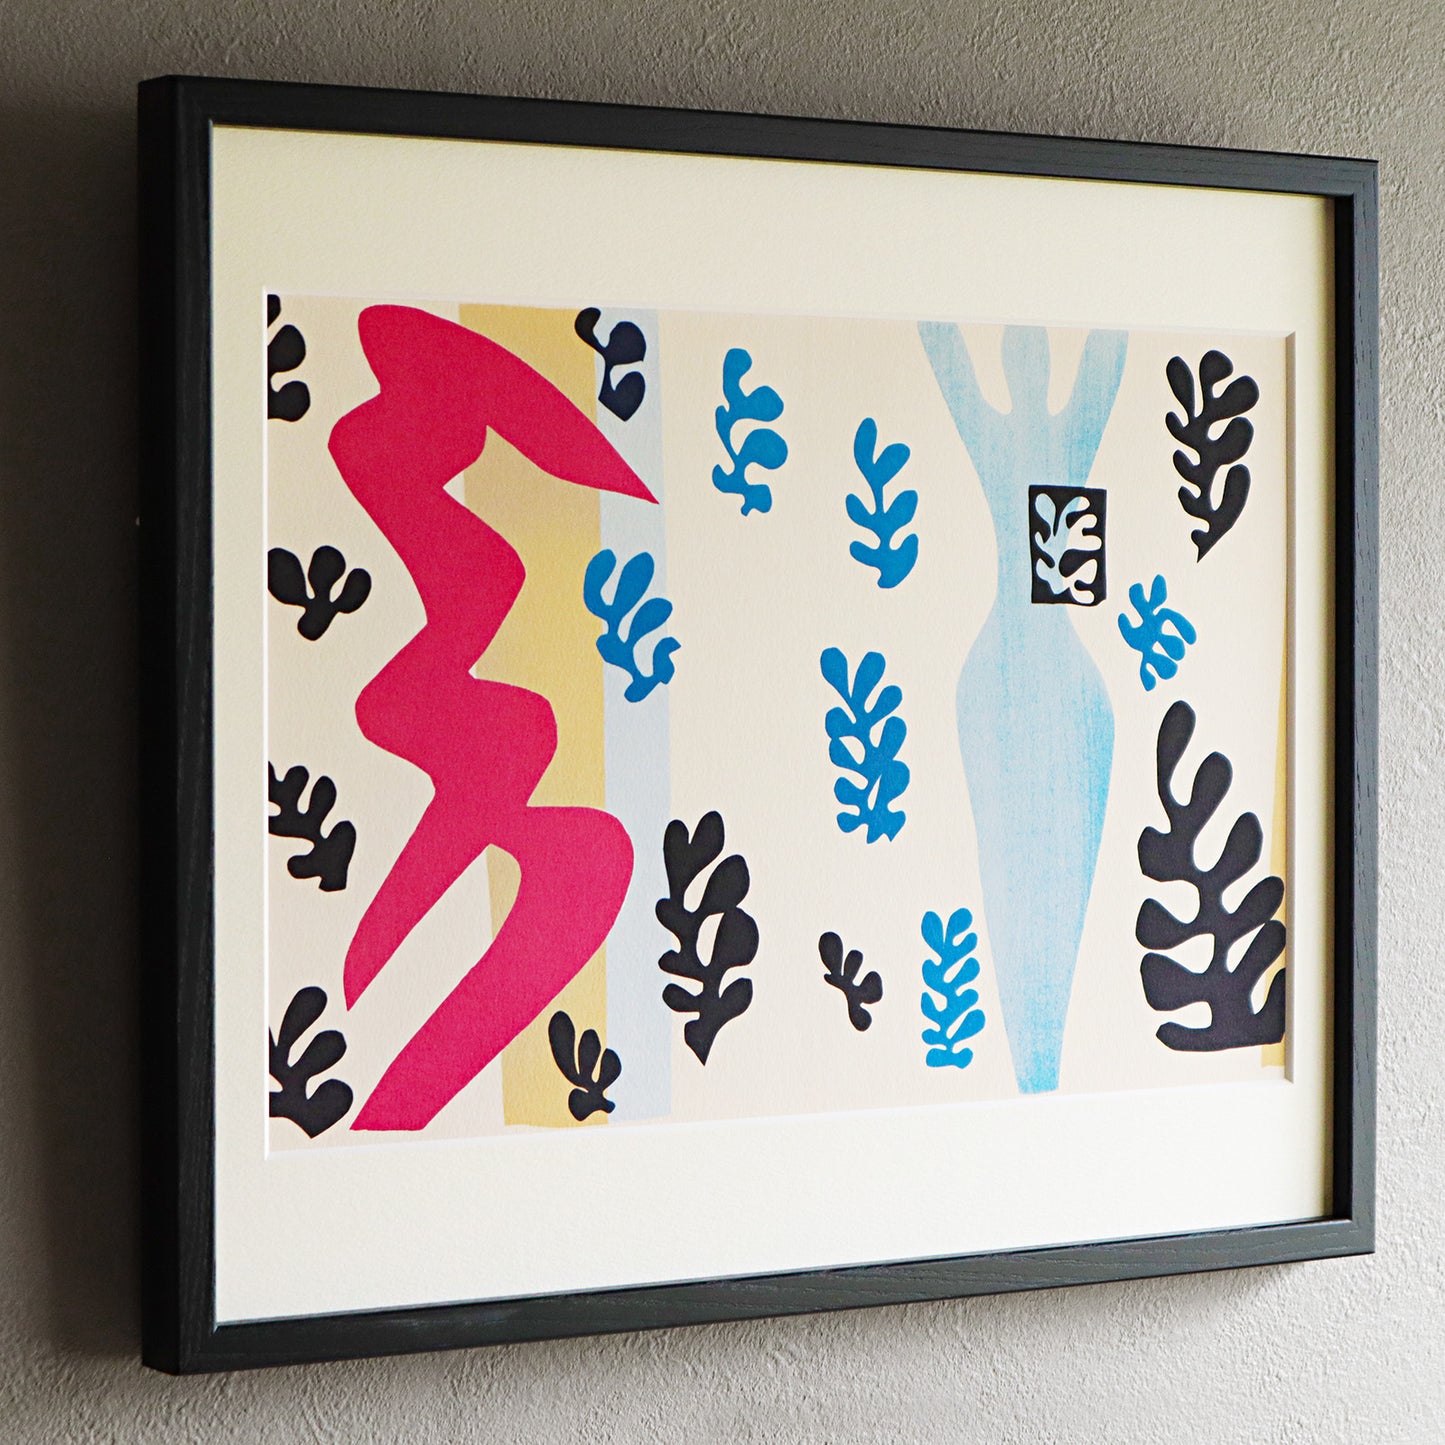 アンリ・マティス 版画集『ジャズ』「ナイフ投げ」アートポスター（フレーム付き） / Henri Matisse “Jazz /The Knife-Thrower” Art Frame